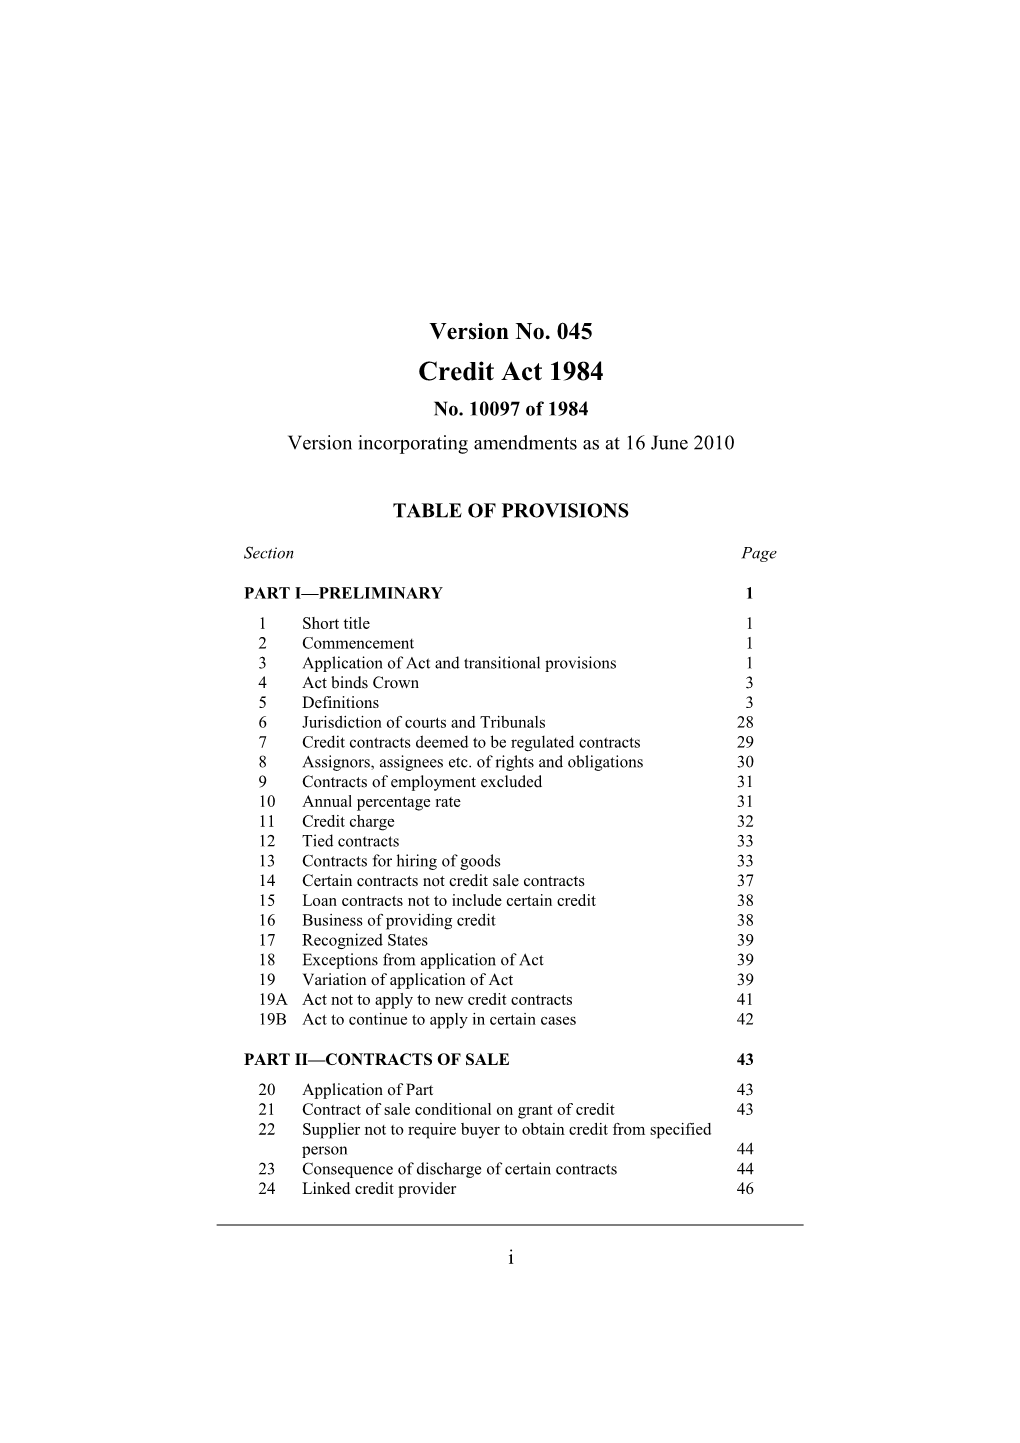 Version Incorporating Amendments As at 16 June 2010